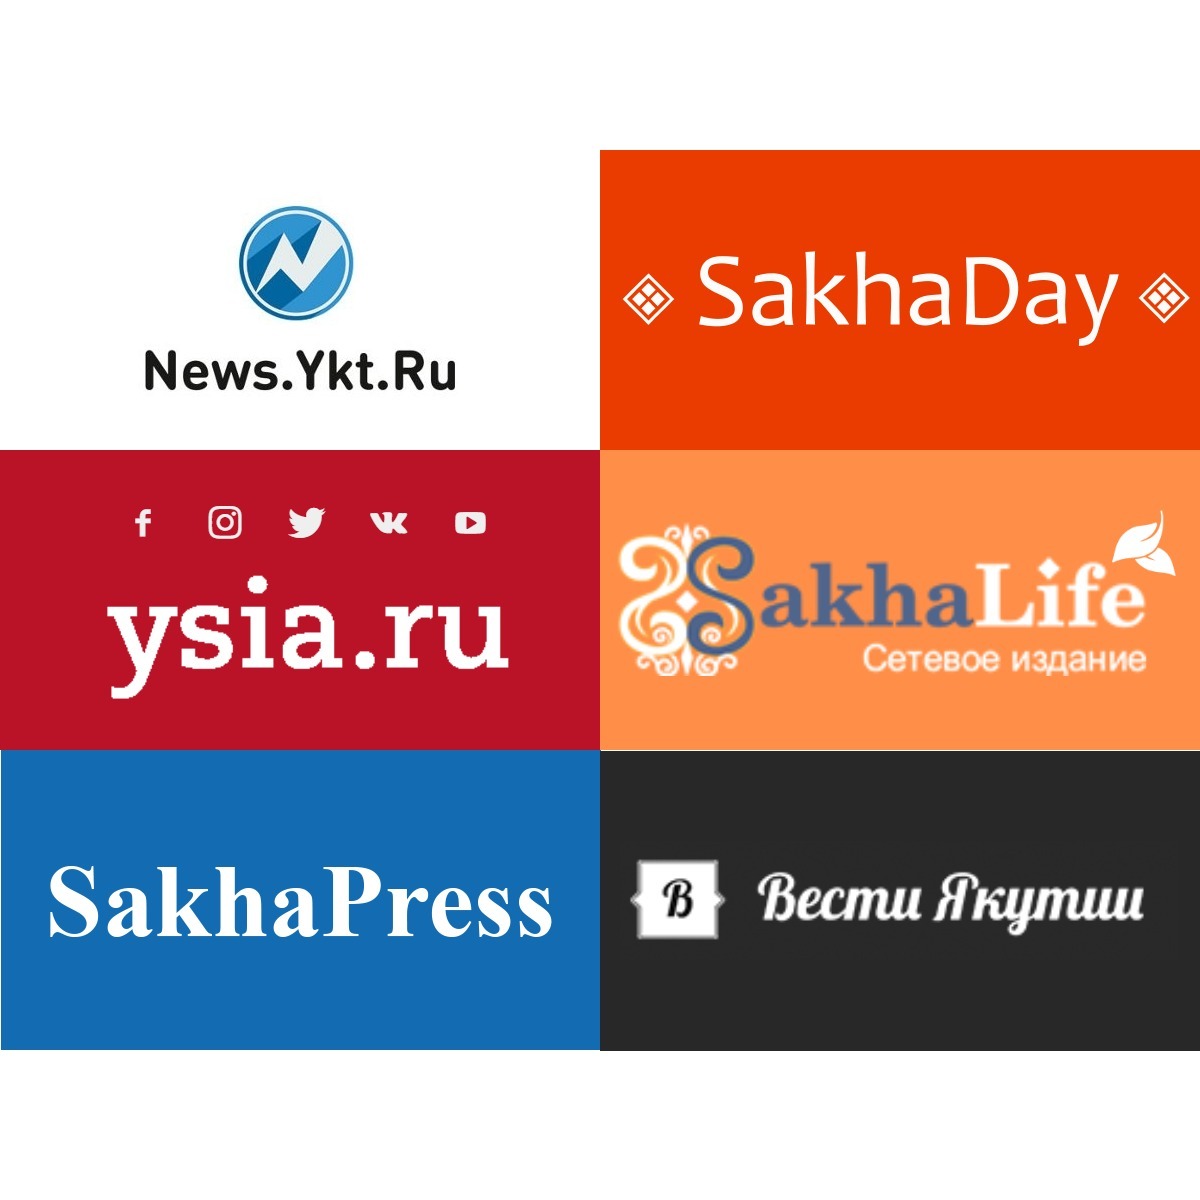 Рейтинг якутских сайтов по новому показателю качества (ИКС)